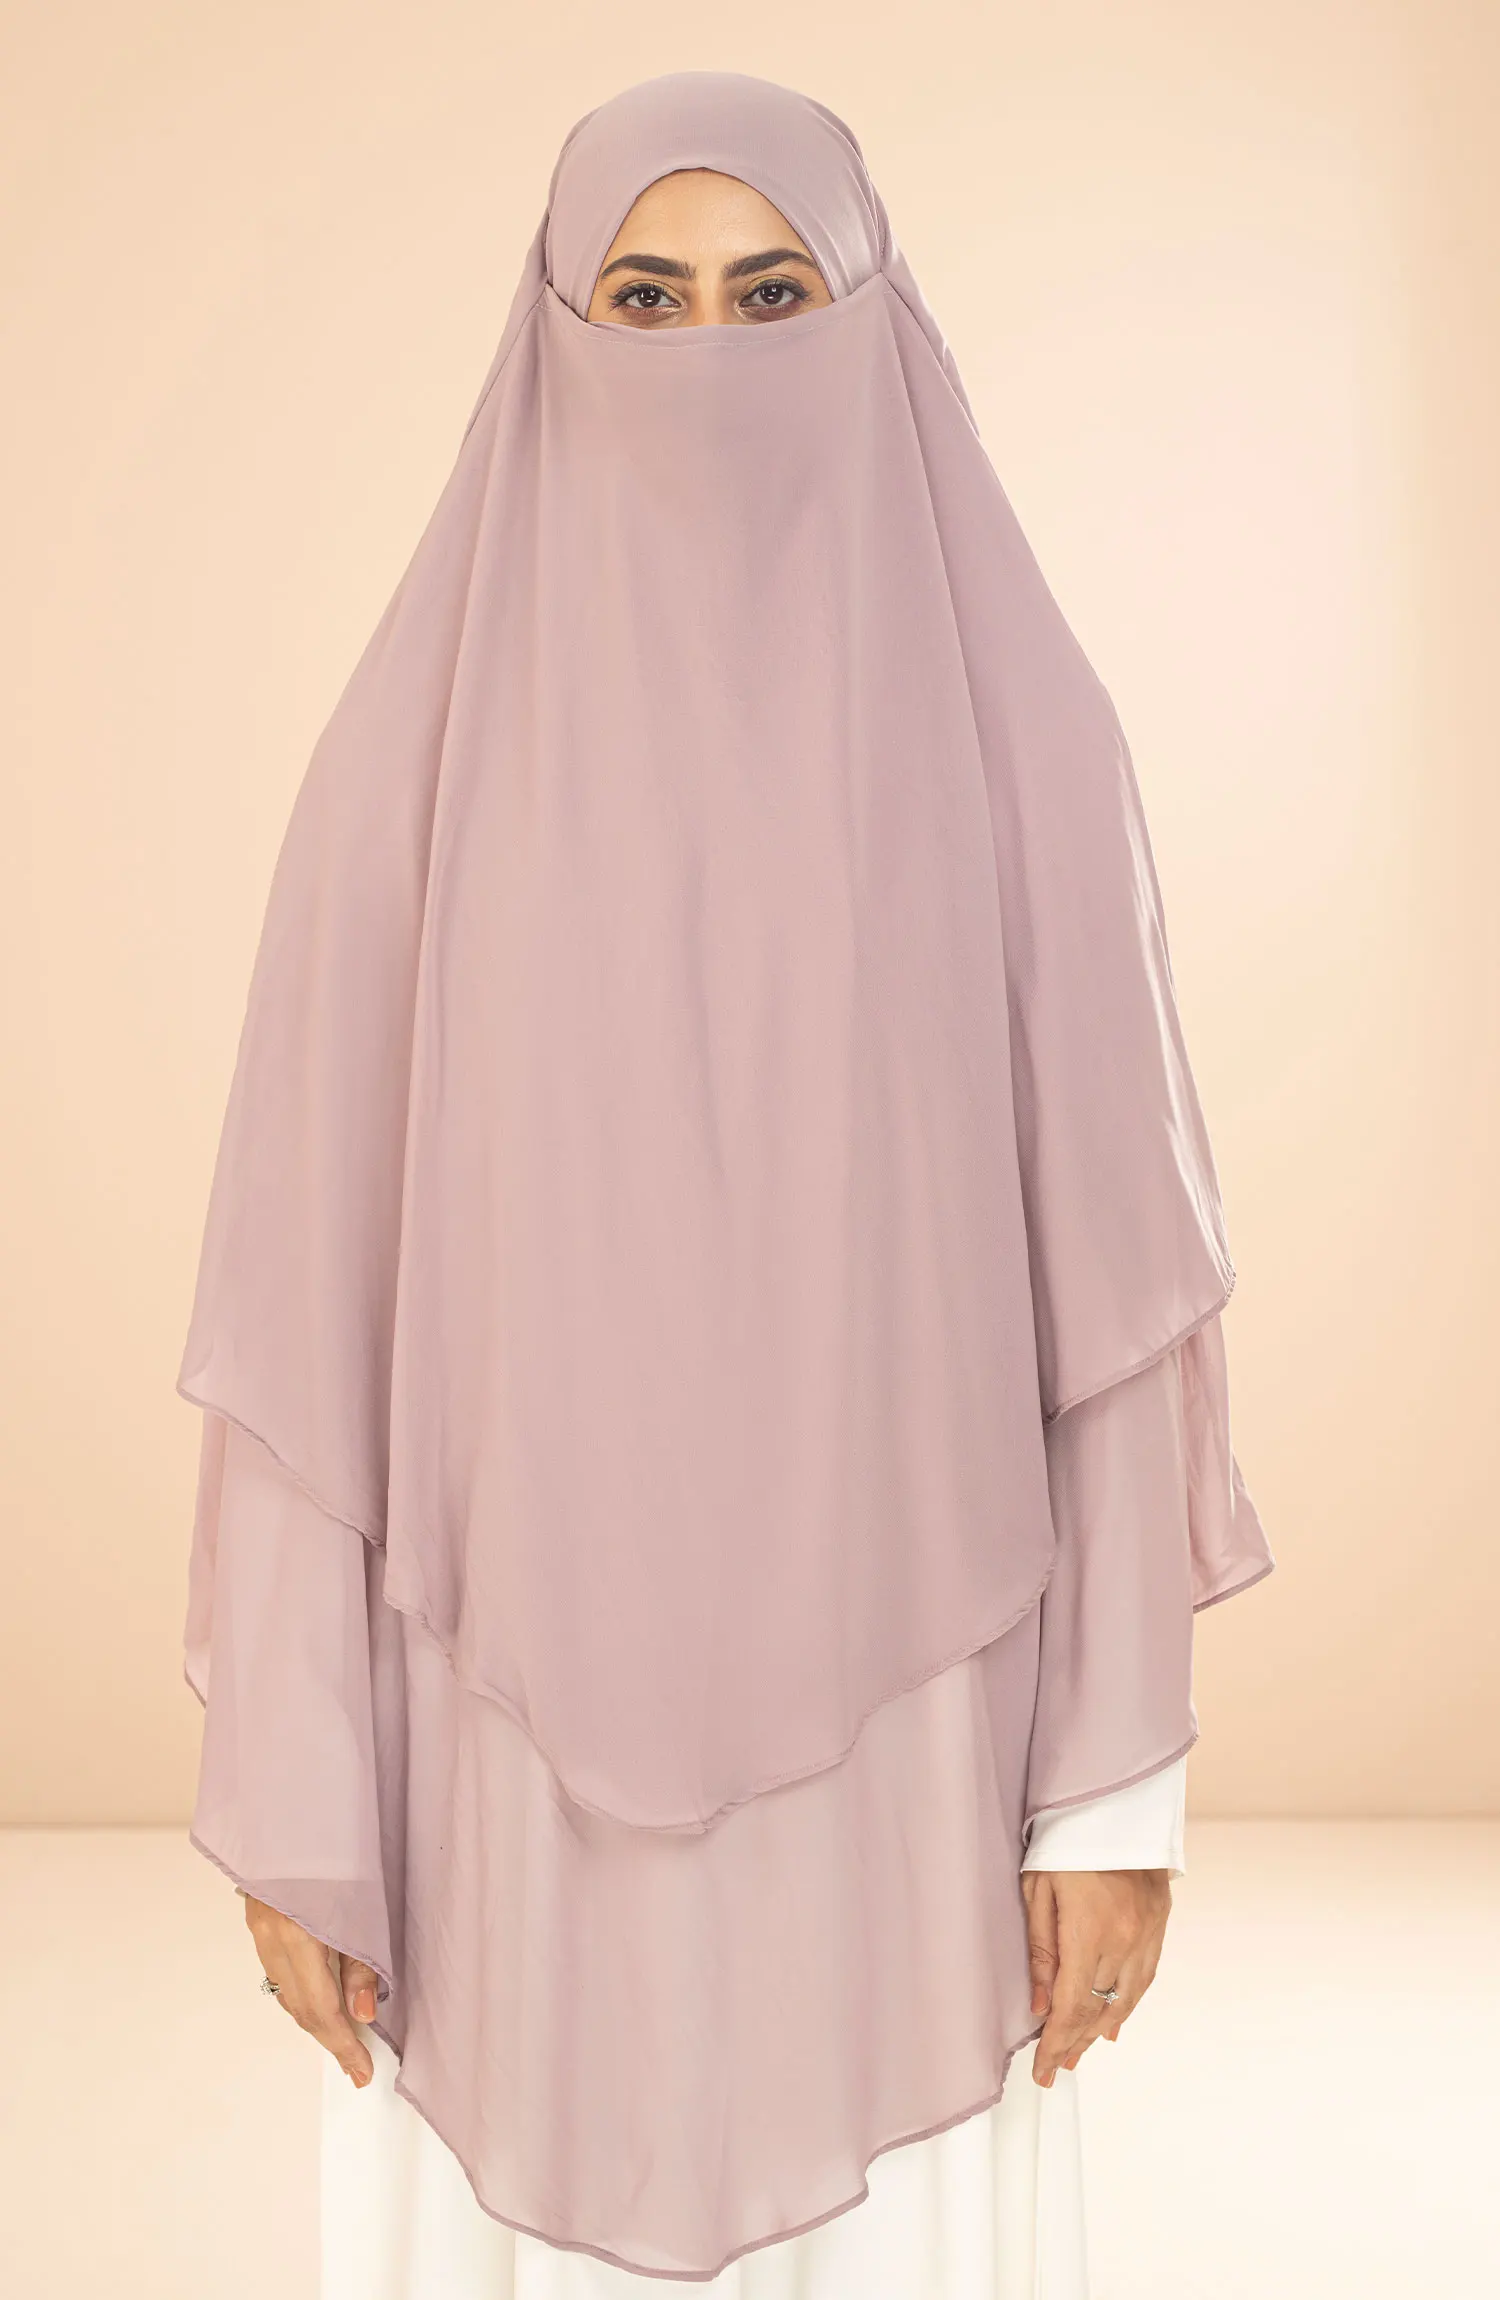 Black Camels Shanaz Khimar Hijab Collection - SH 02